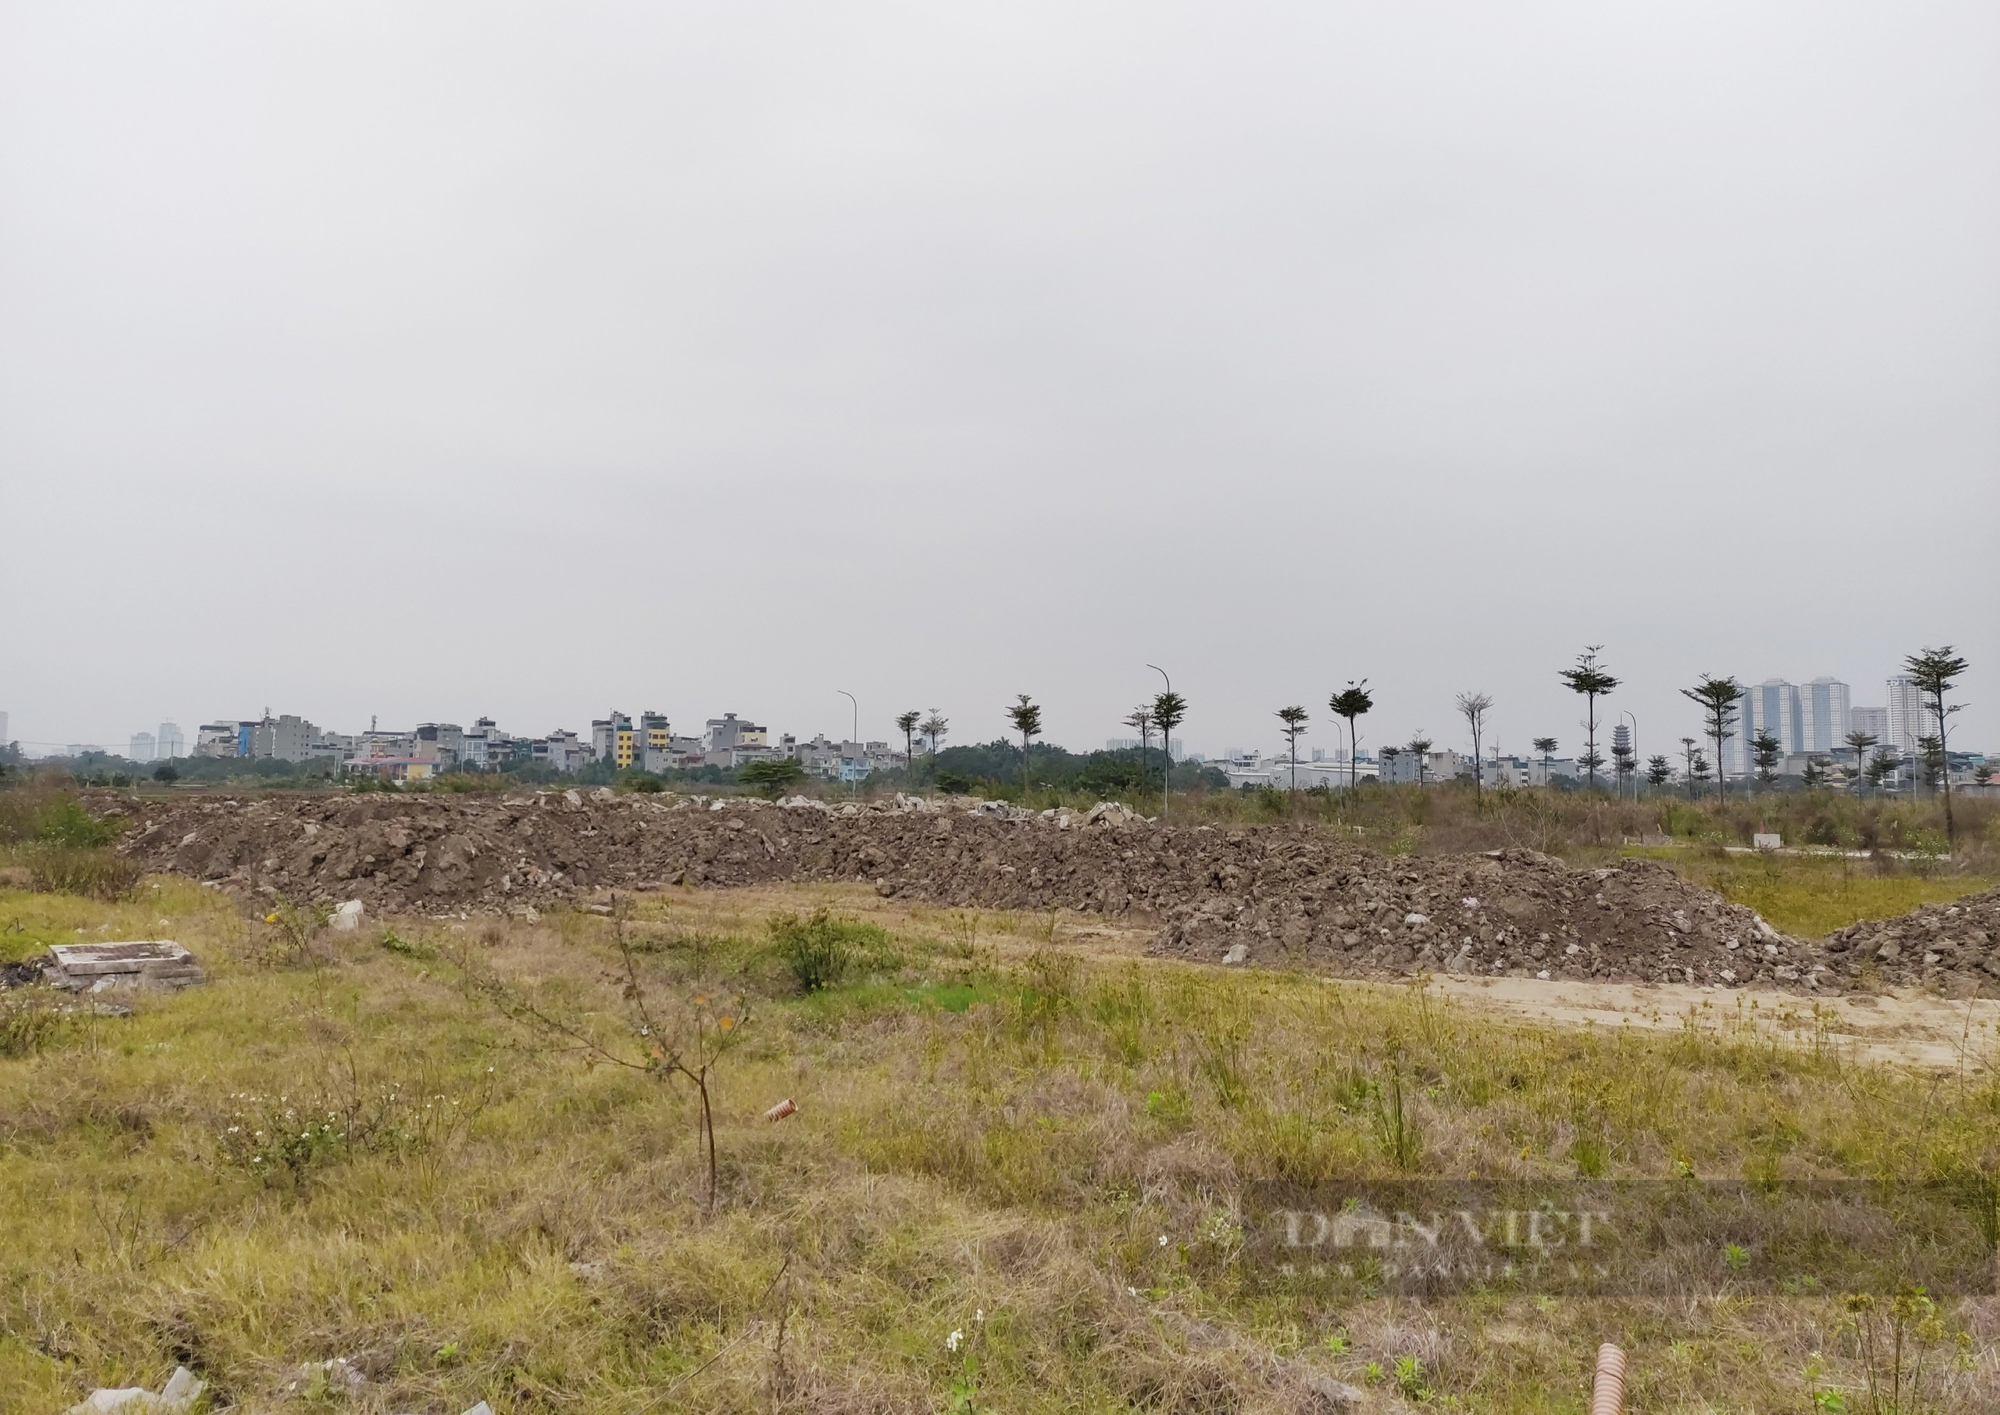 “Cạm bẫy chết người” bên trong dự án vướng lùm xùm ở huyện Thanh Trì - Ảnh 8.